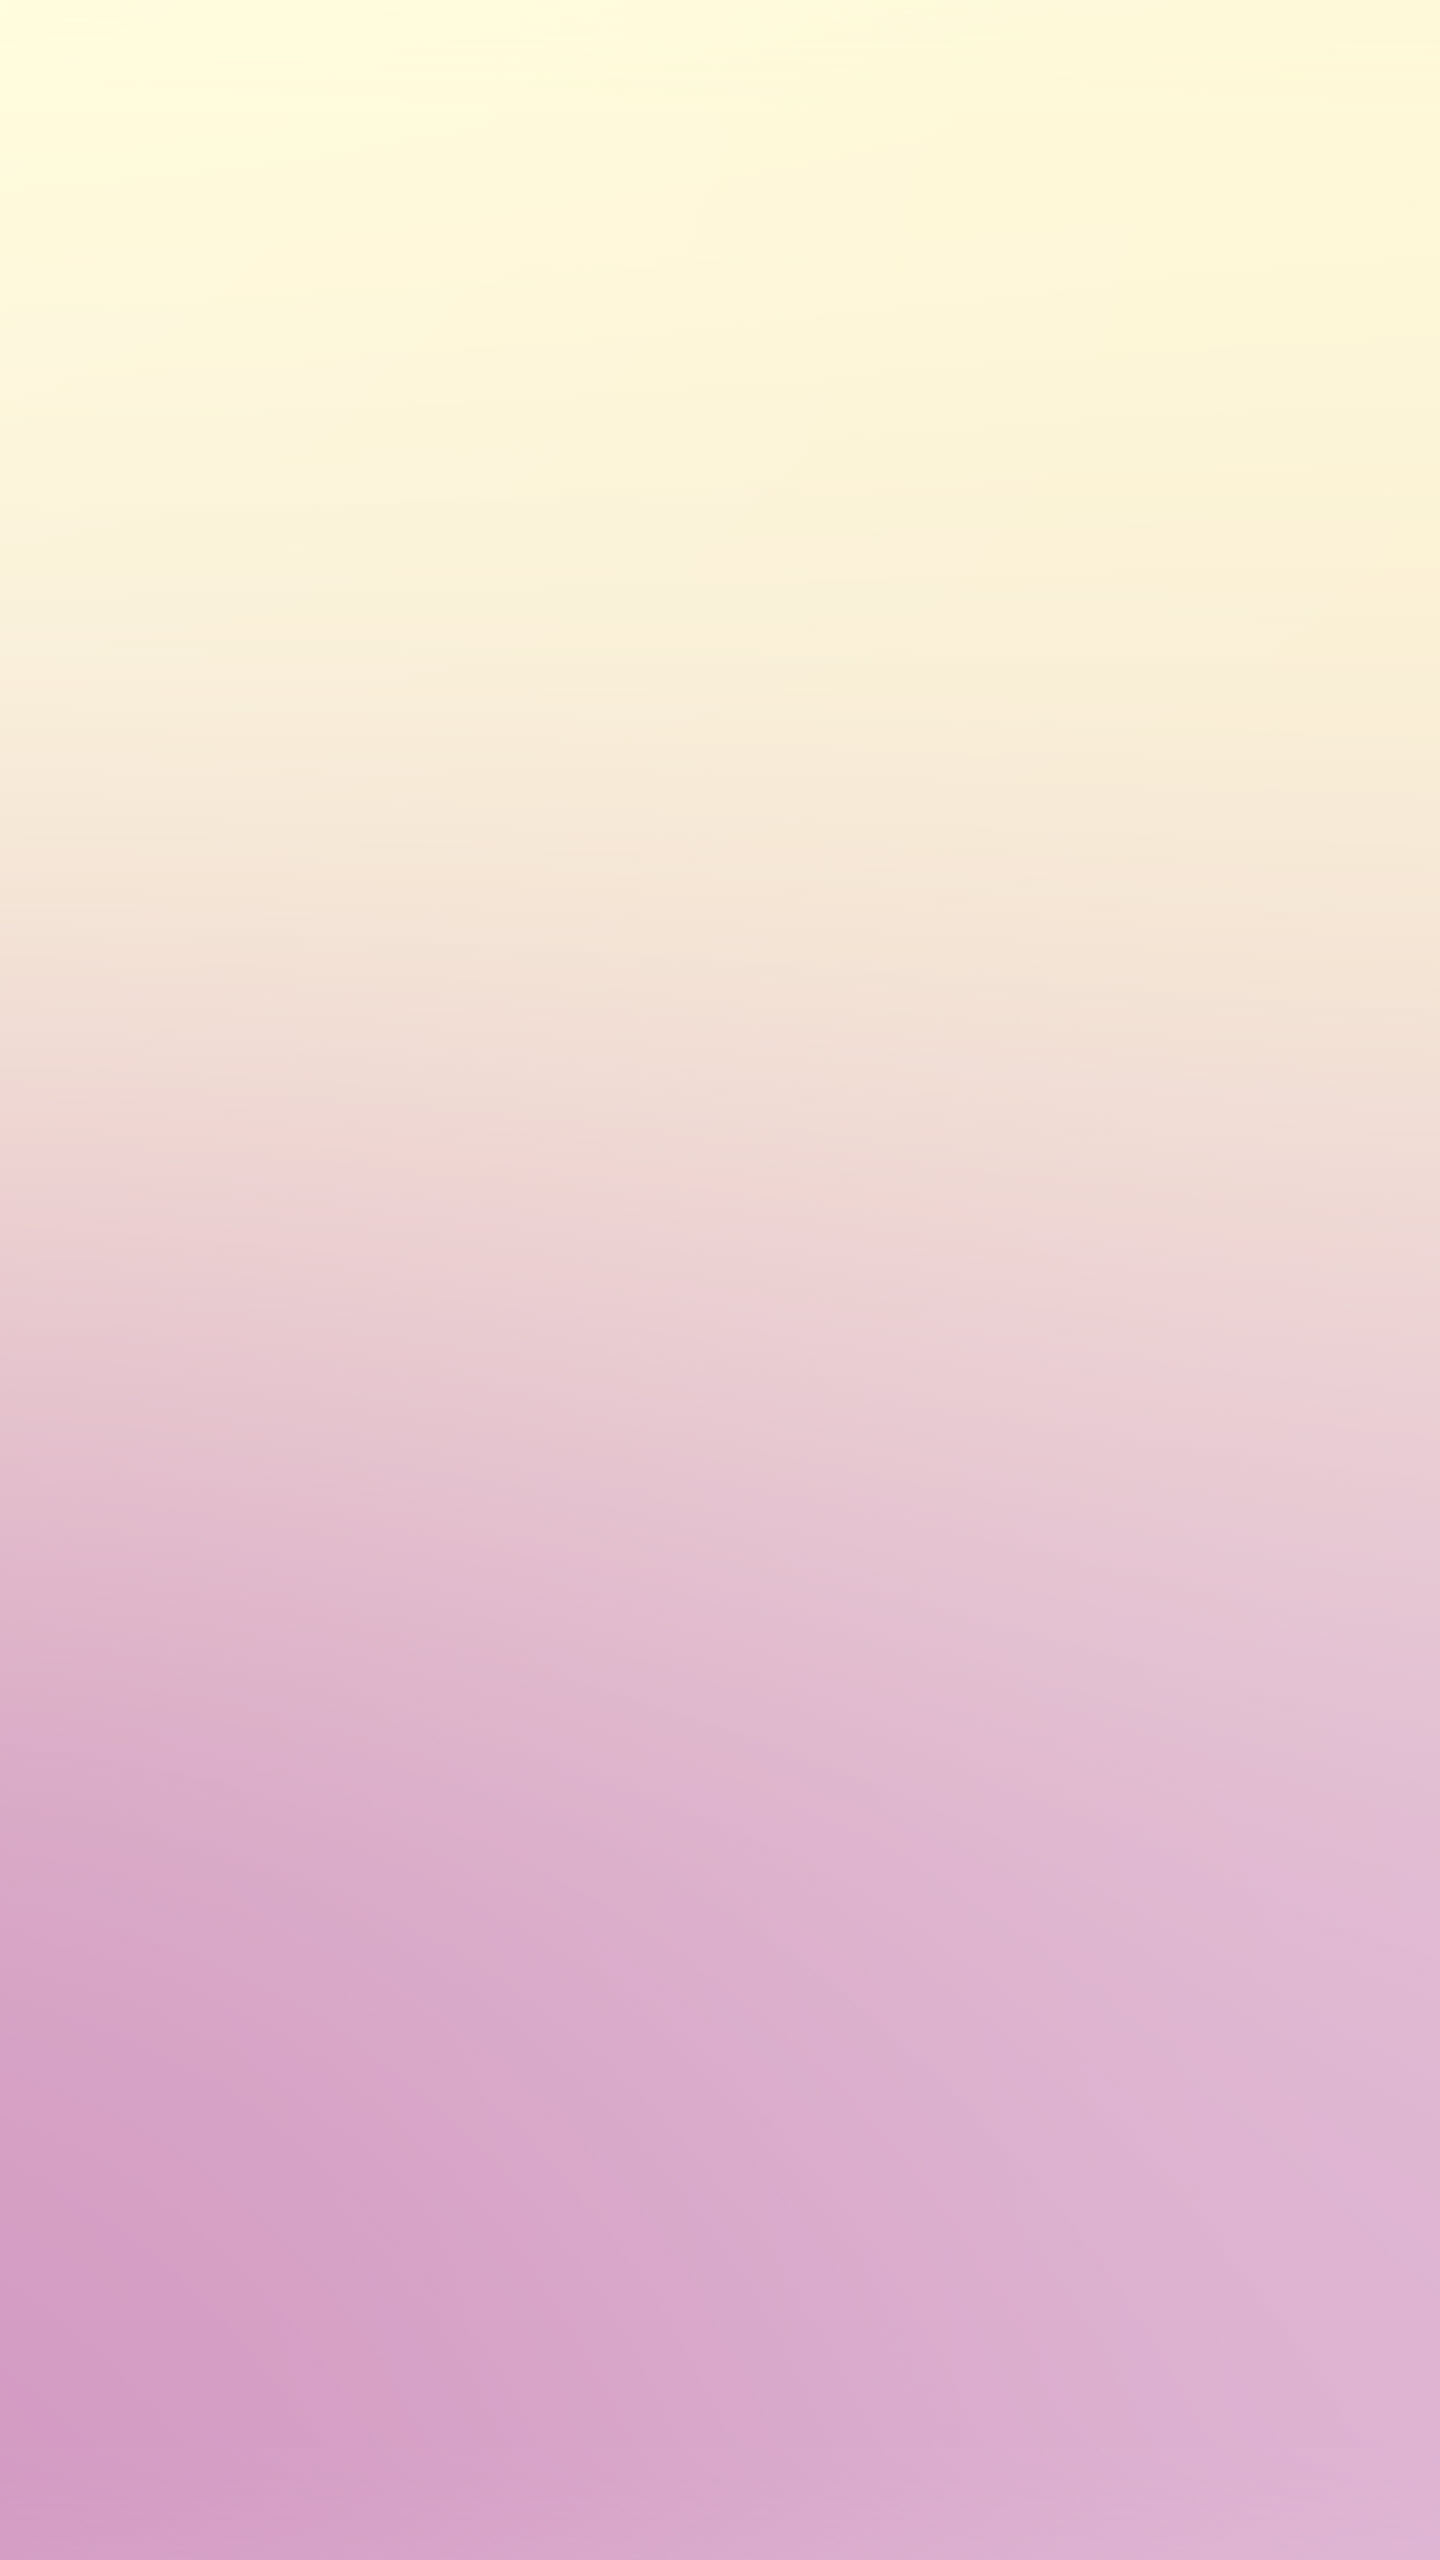 Hình nền màu hồng pastel trơn cực đẹp - Ảnh đẹp Free